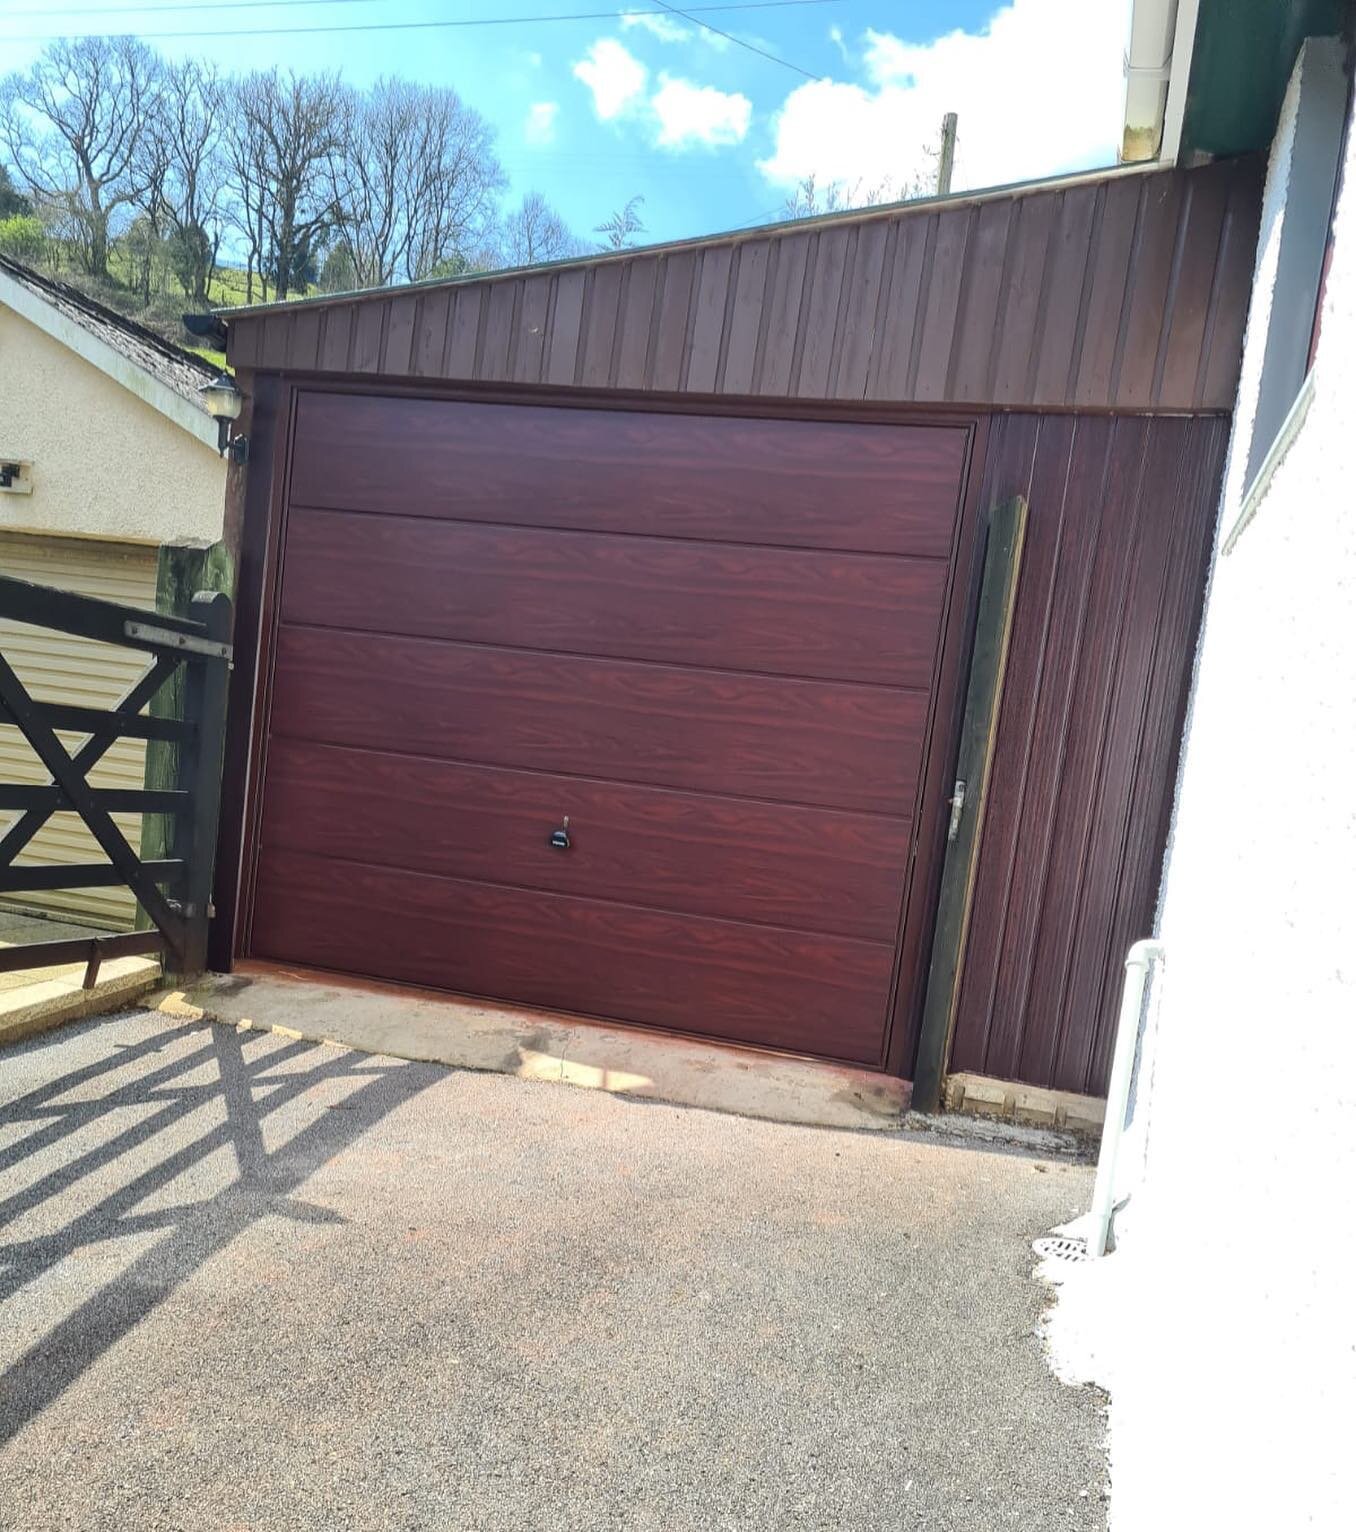 Rosewood Garage Door 🌹 with PVC to finish 
#upandoverdoor #garagedoorinstallation #garagedoorservice #jggaragedoors #garagedoorupgrade #garahedoor #homemaintenance #pictureoftheday #garagedoorwales